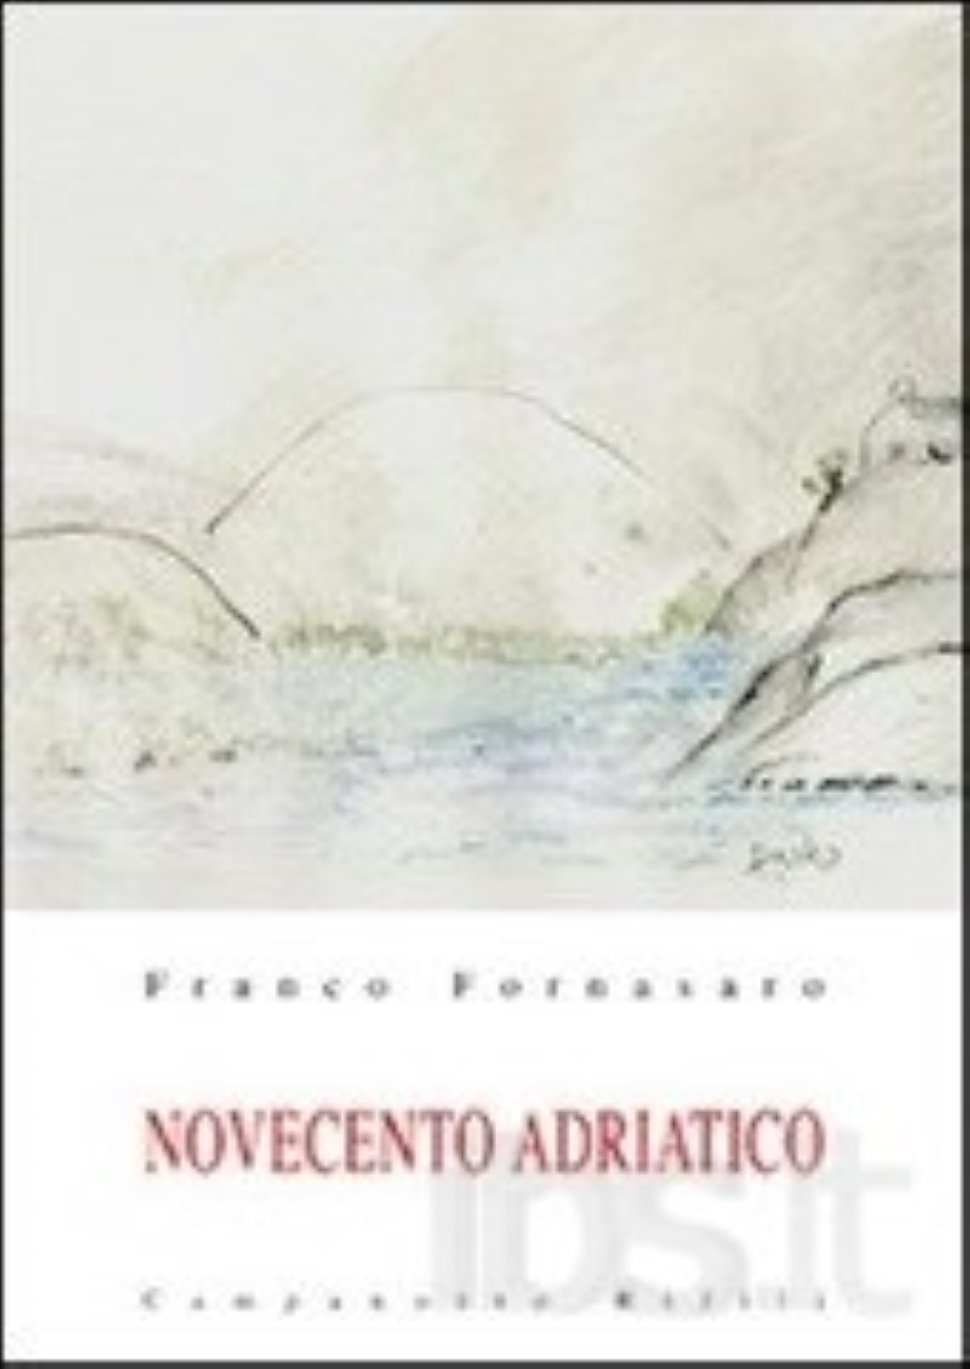 Cividale del Friuli. Presentazione del libro “Novecento adriatico”